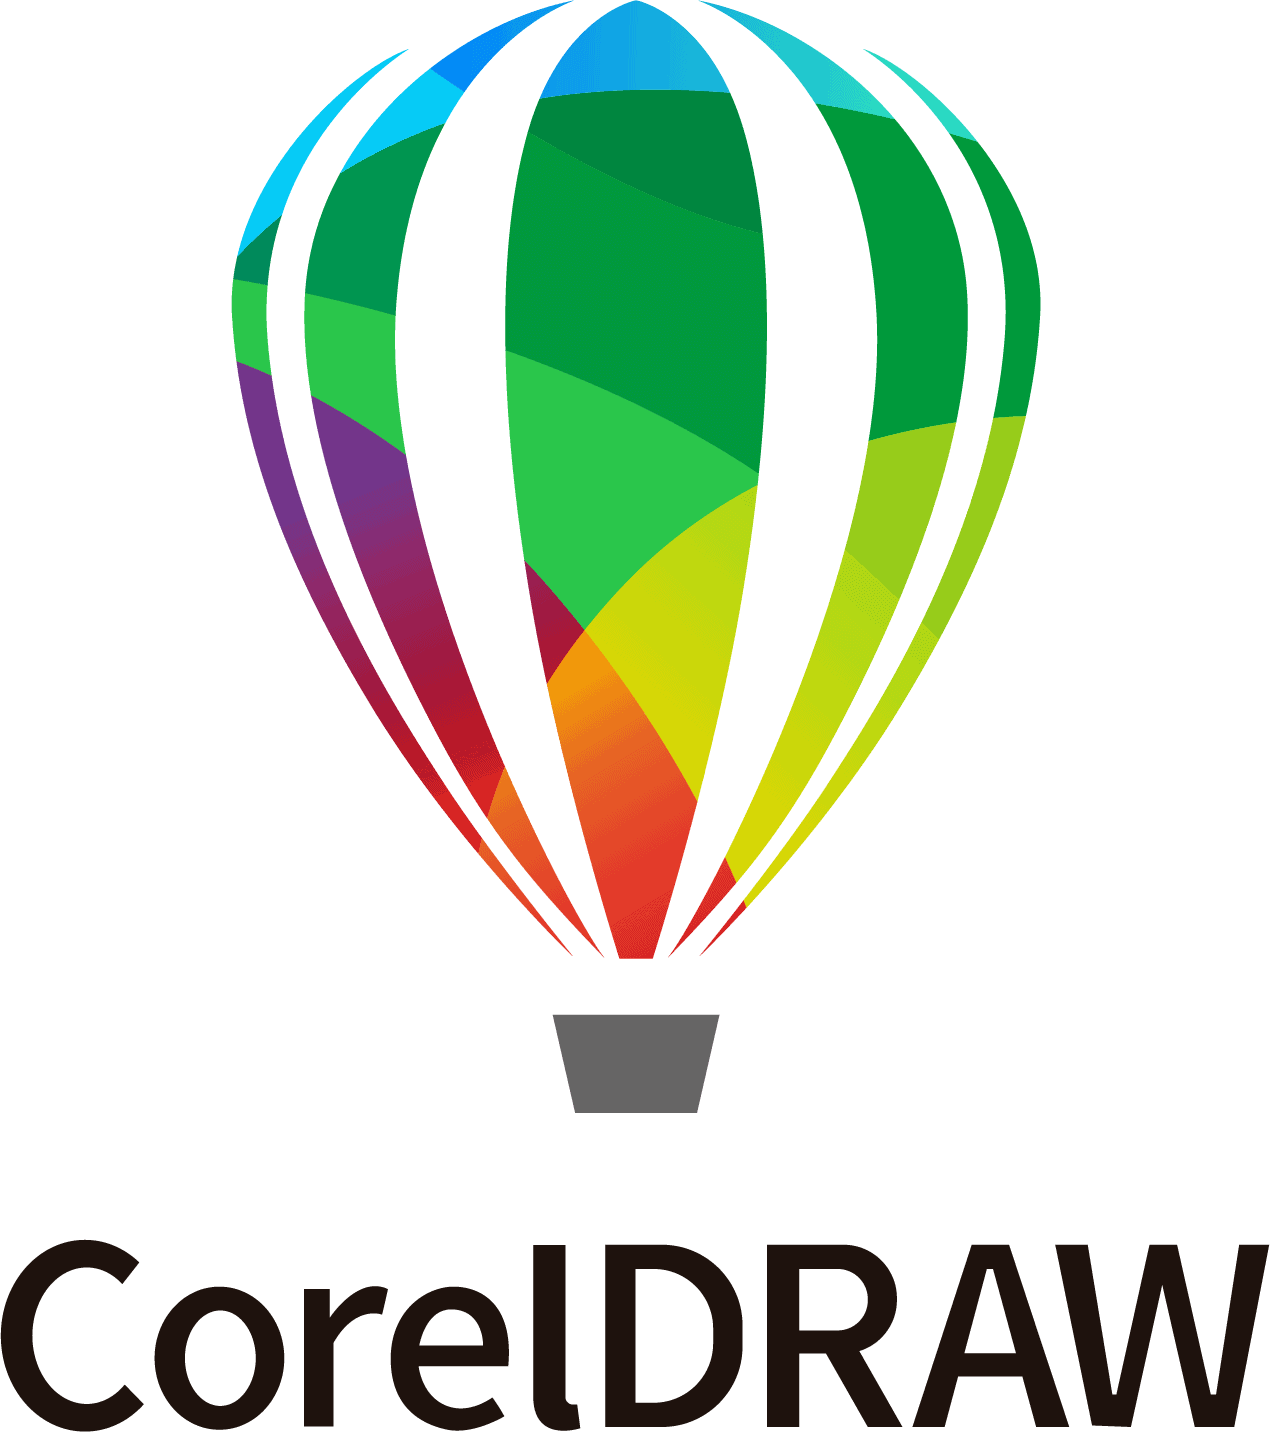 Logo do CorelDraw. O logo mostra um balão acima do nome